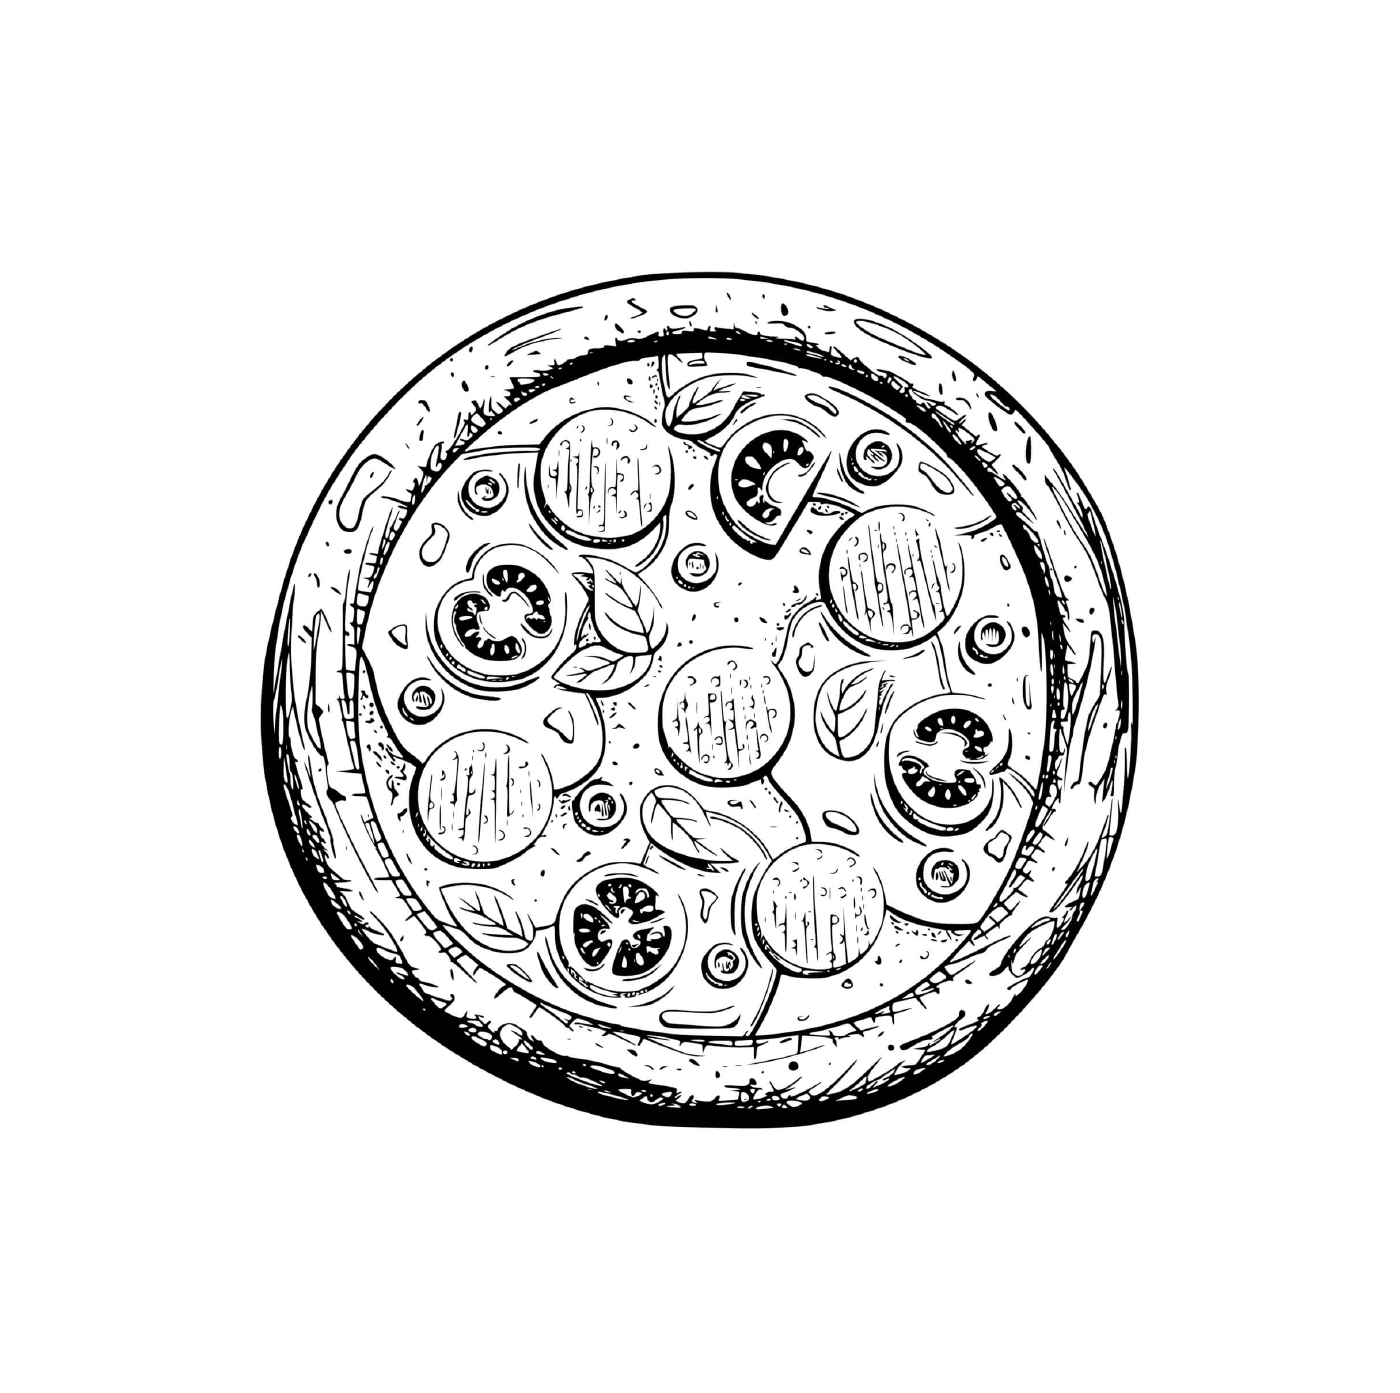   Une pizza carbonara avec mozzarella et parmesan 